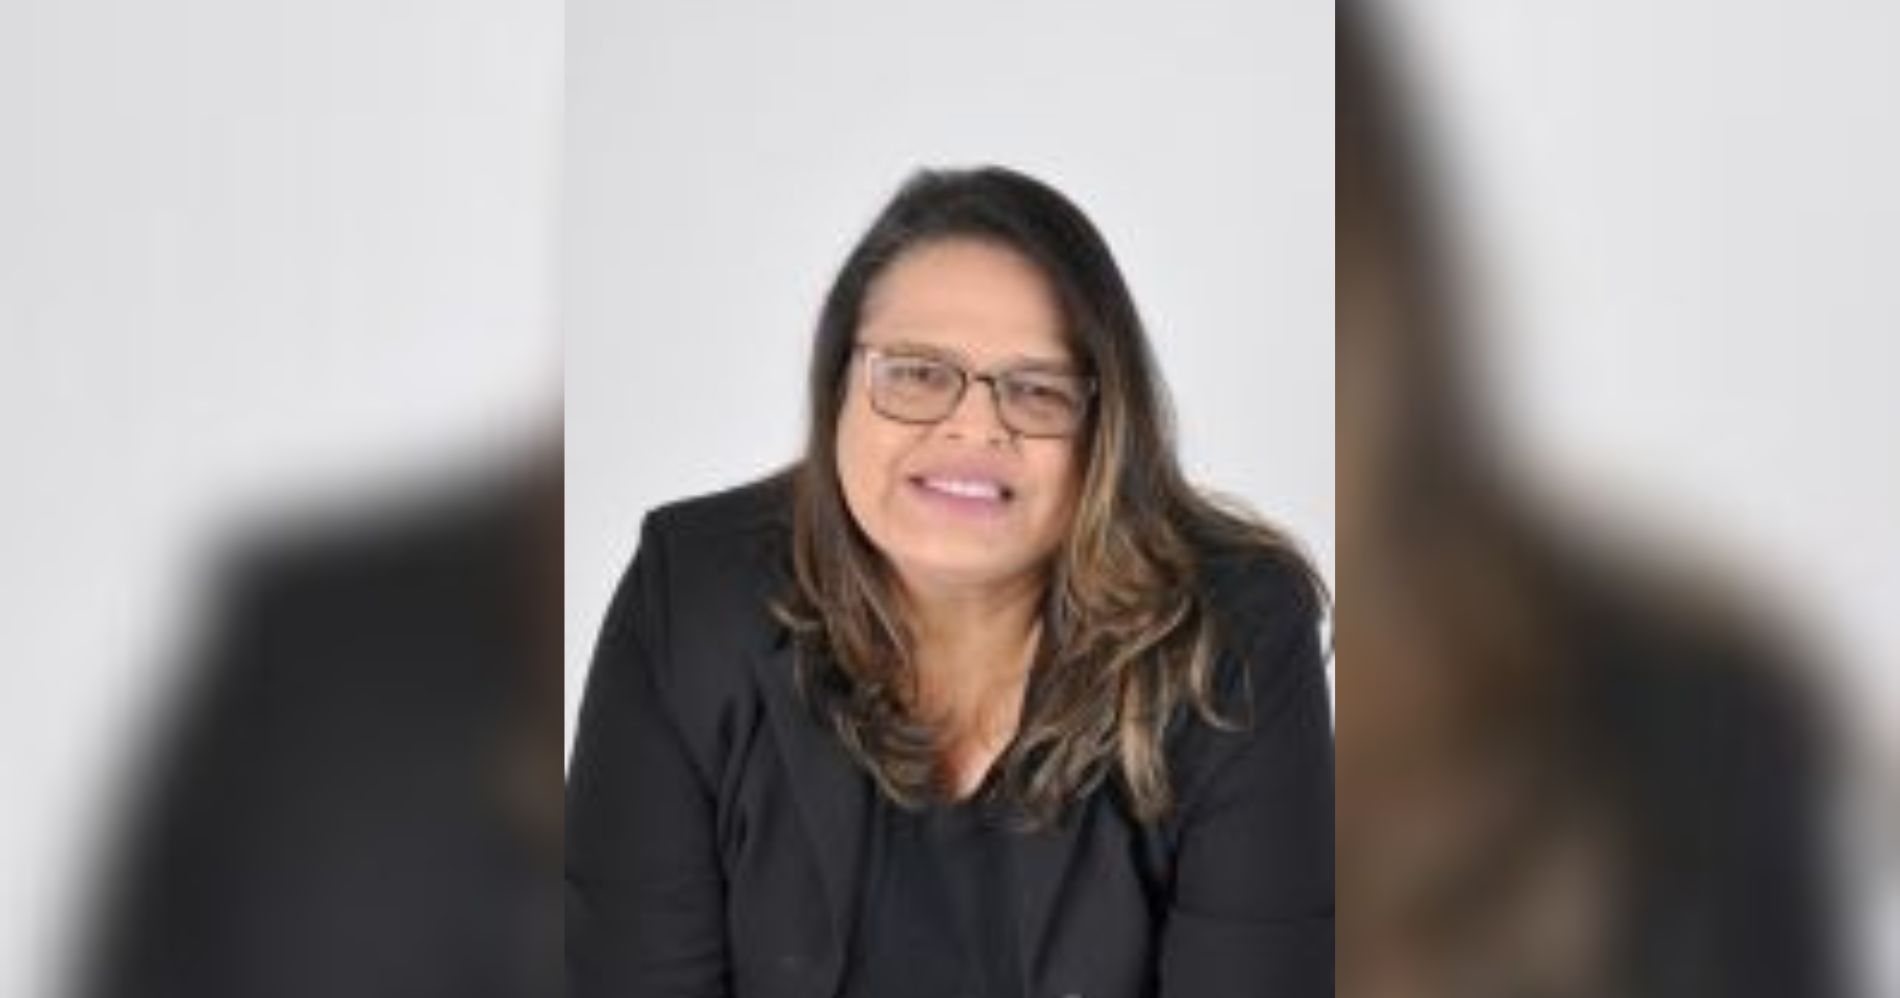 Vereadores de Tunas do Paraná rejeitam contas da ex-prefeita Nalinez Zanon e a tornam inelegível